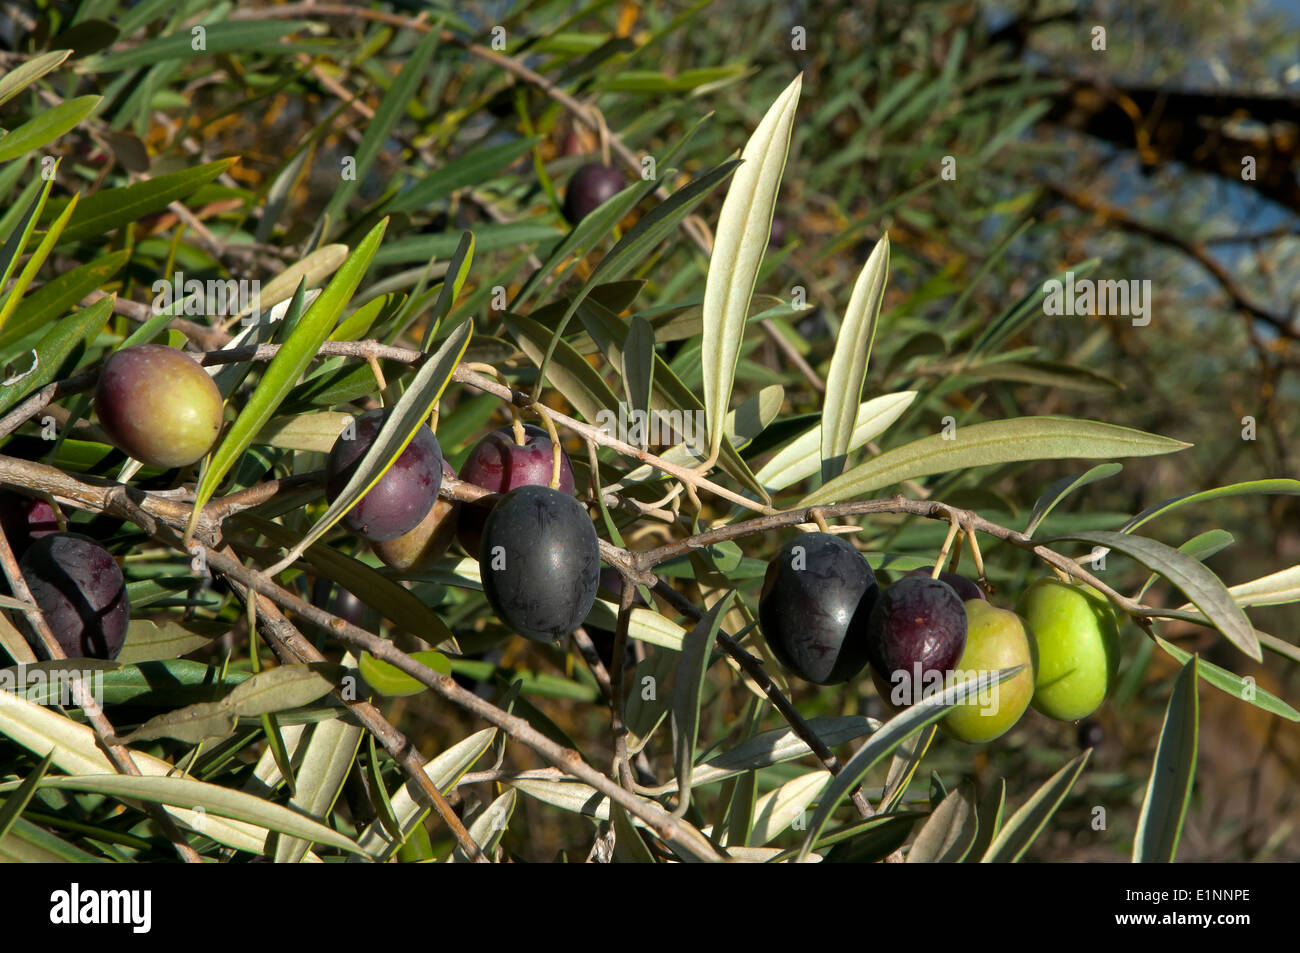 Arbre généalogique olive, olives, la route touristique des bandits, Jauja, province de Cordoue, Andalousie, Espagne, Europe Banque D'Images